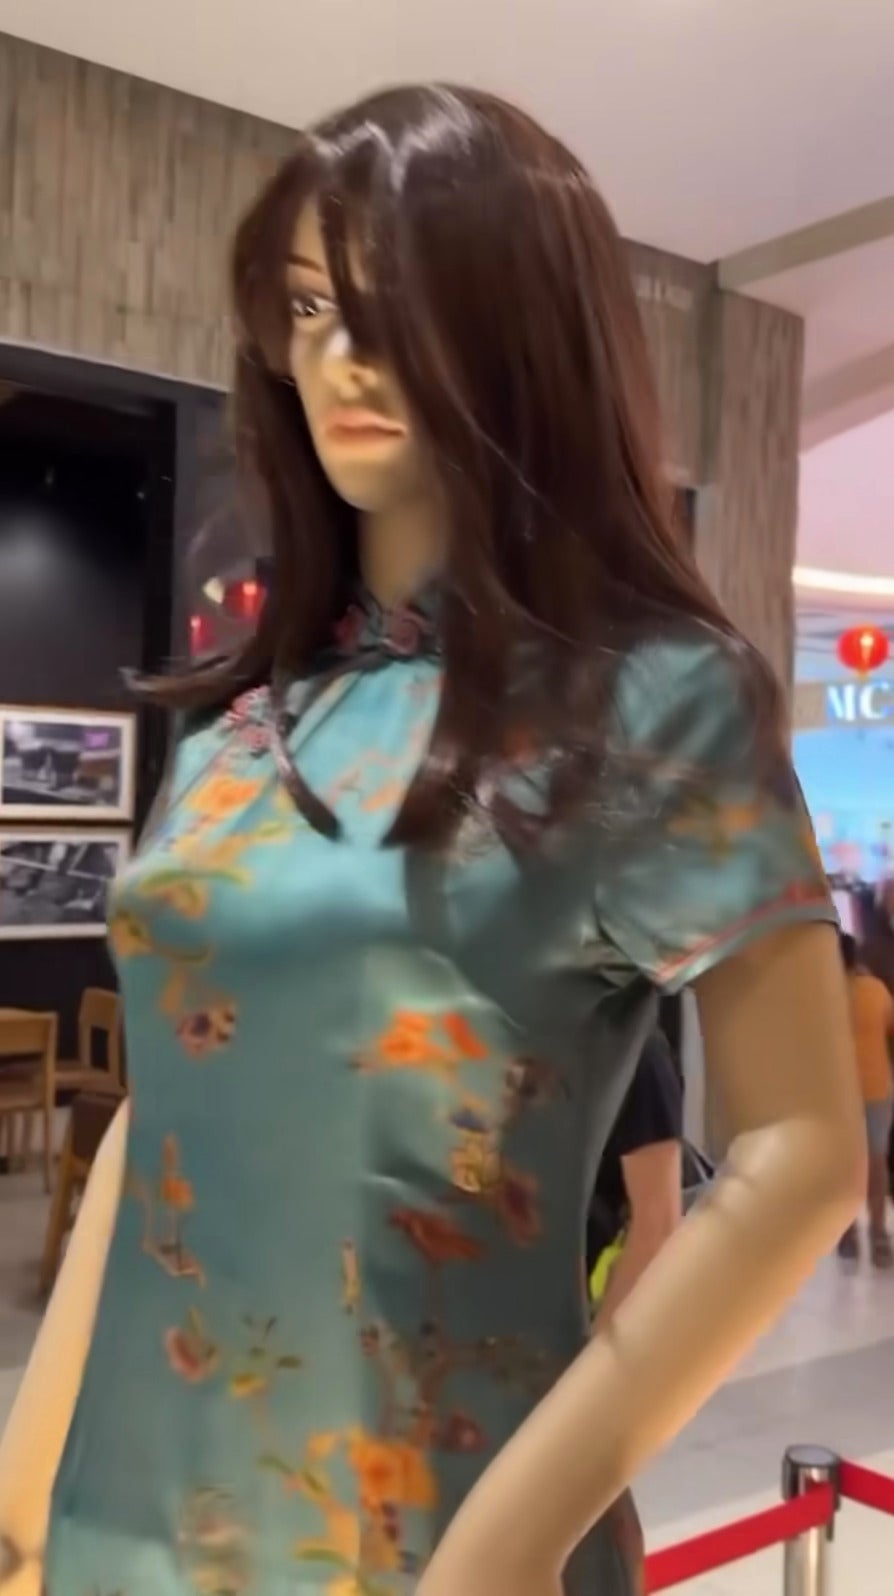 ห้างมาเลเซีย หุ่นนางแบบ ชุดกี่เพ้า หลอน ตรุษจีน